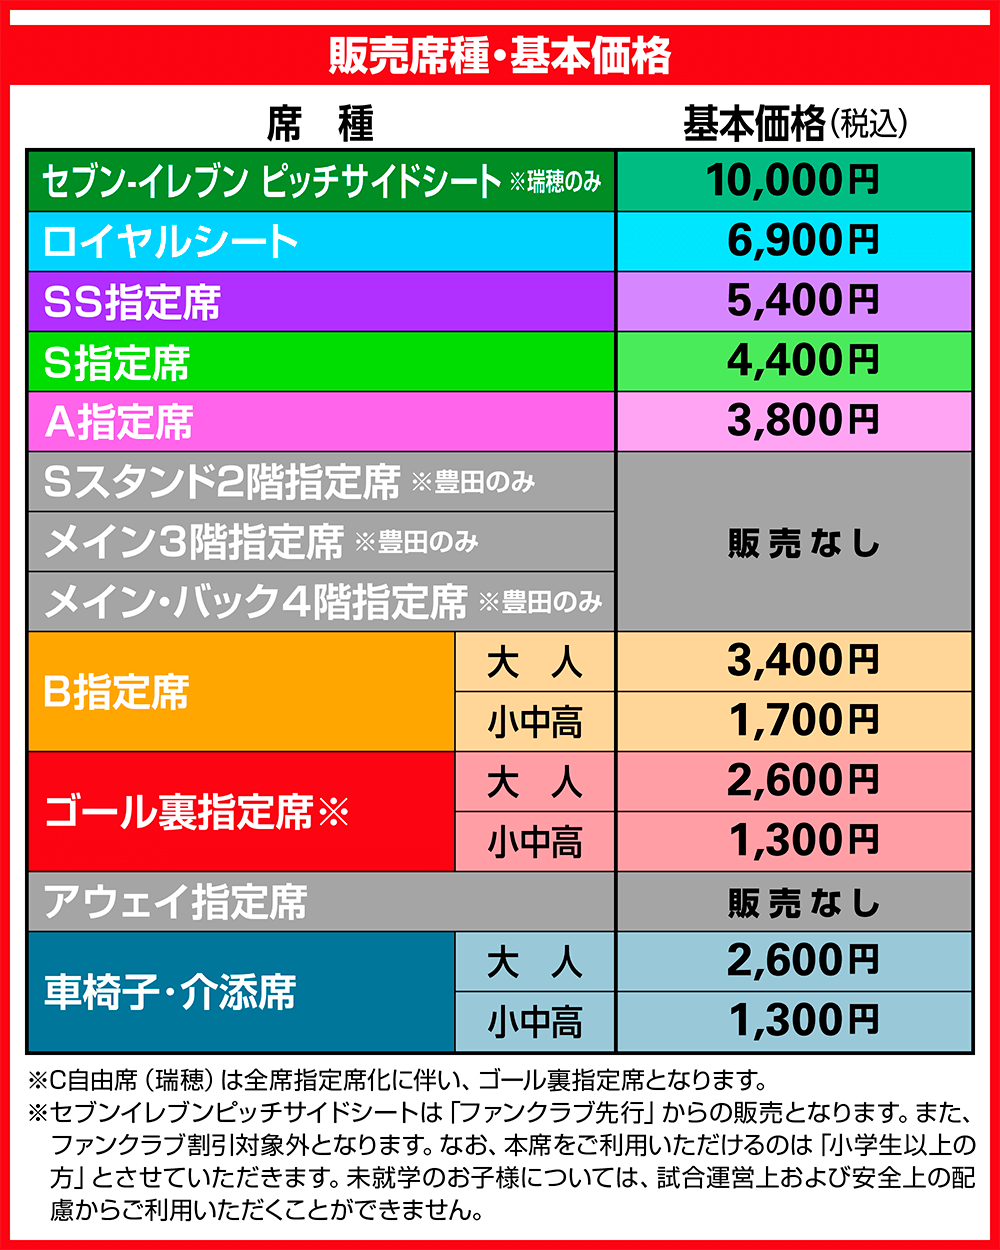 9/9（水）横浜F・マリノス戦における「新たなチケット販売様式 